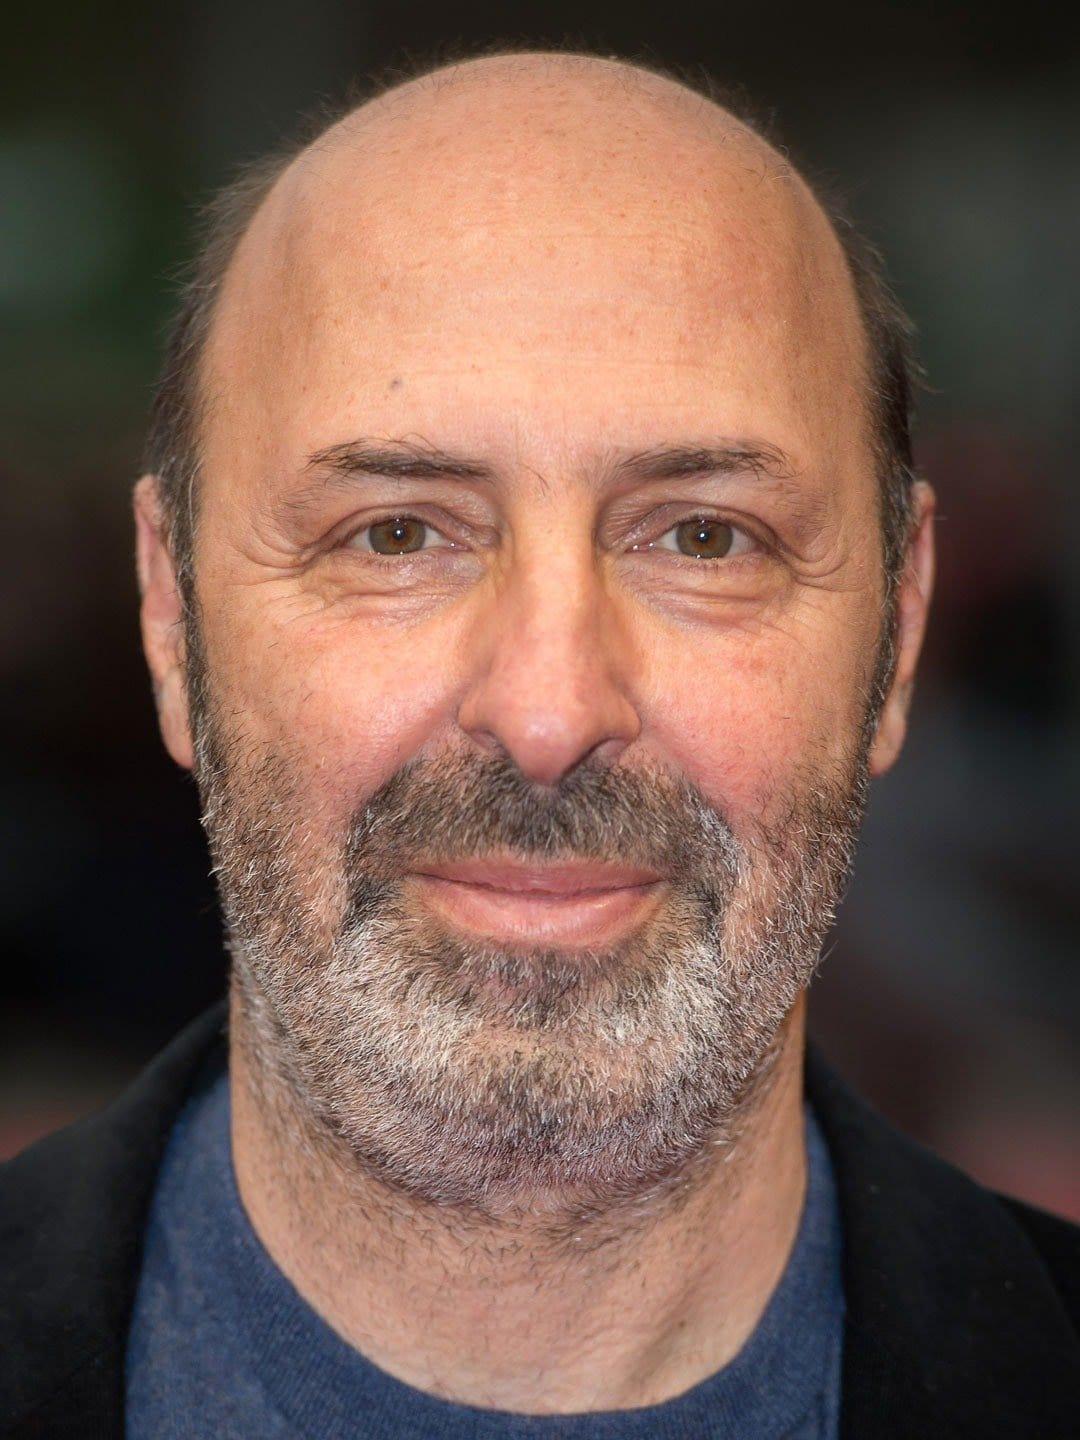 Cédric Klapisch French Director, Writer, Actor, Screenwriter, Producer